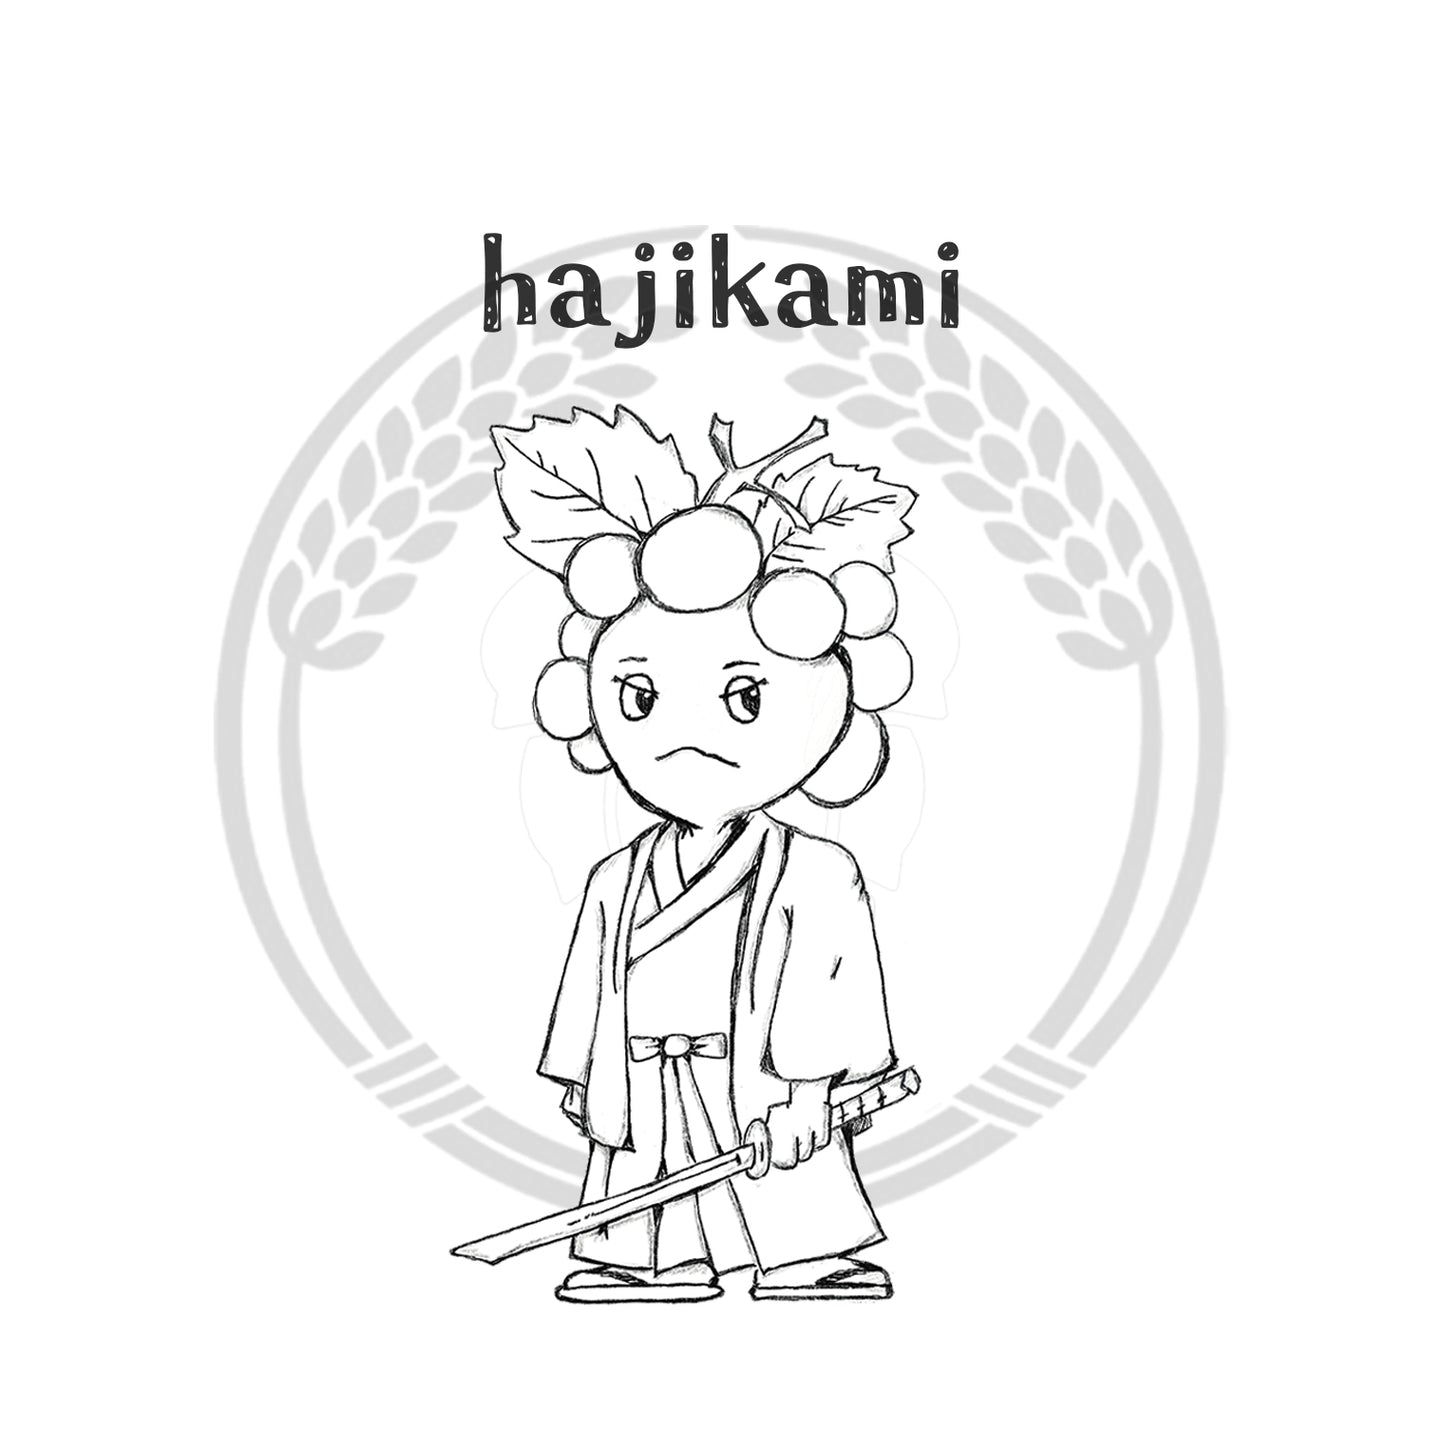 Hajikami